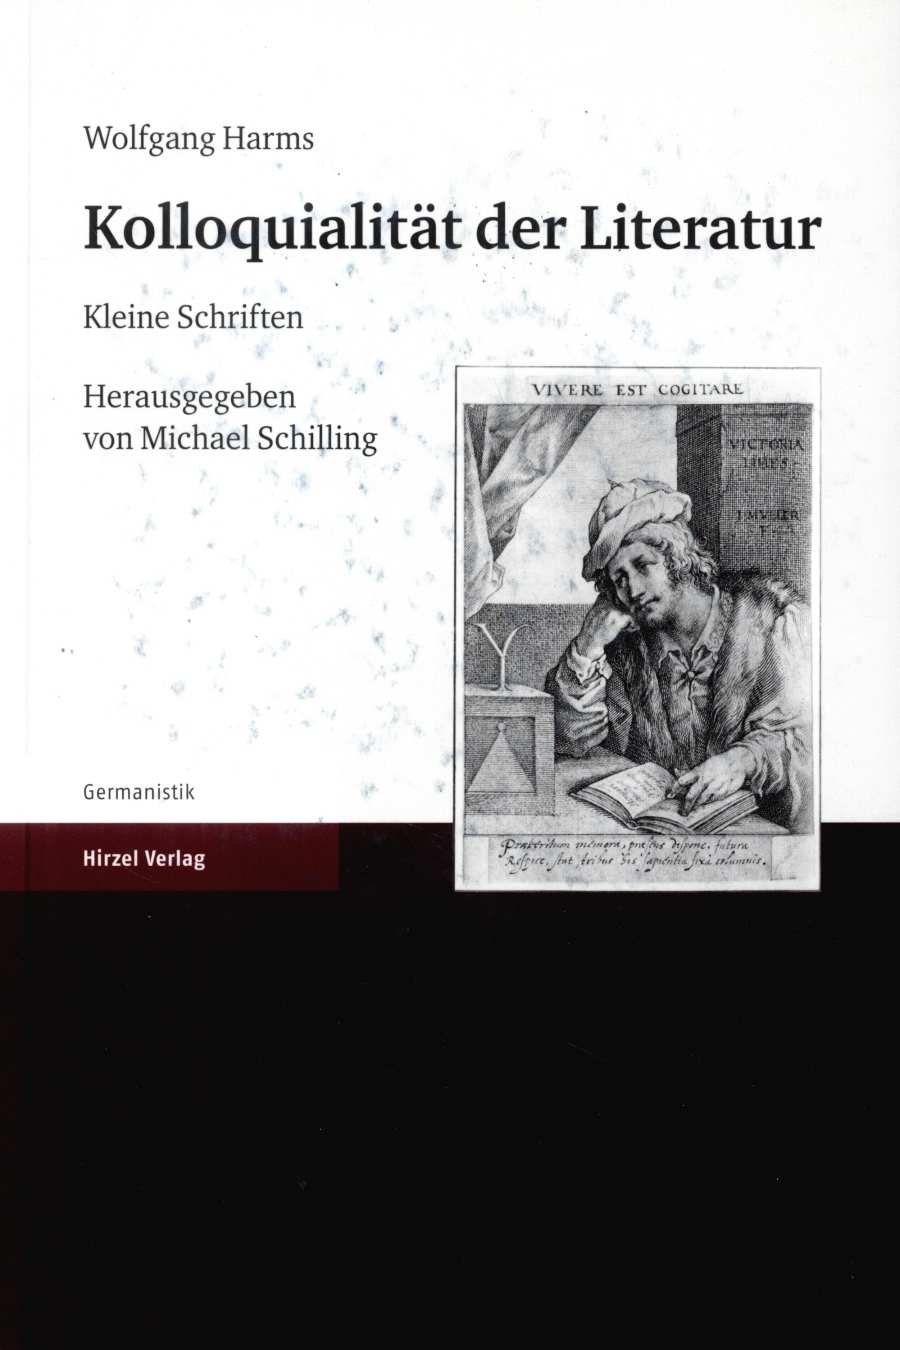 Wolfgang Harms. Kolloquialität der Literatur